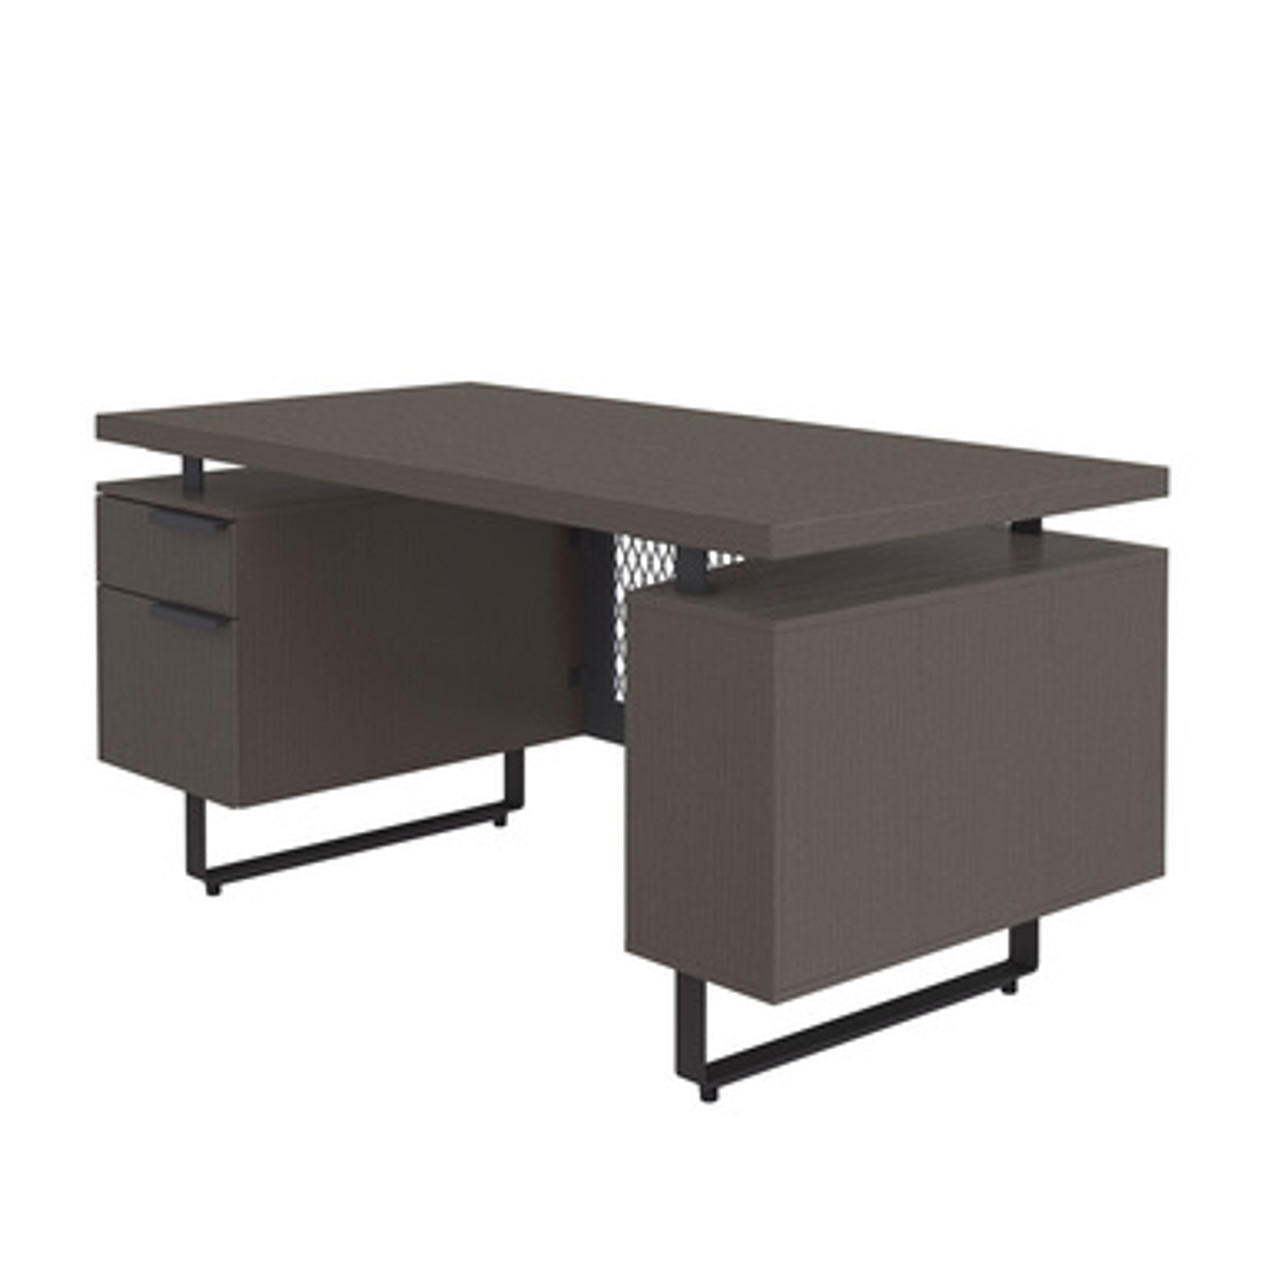  Office Source Palisades Gauntlet Gray Floating Top Executive Desk EV6030SP 